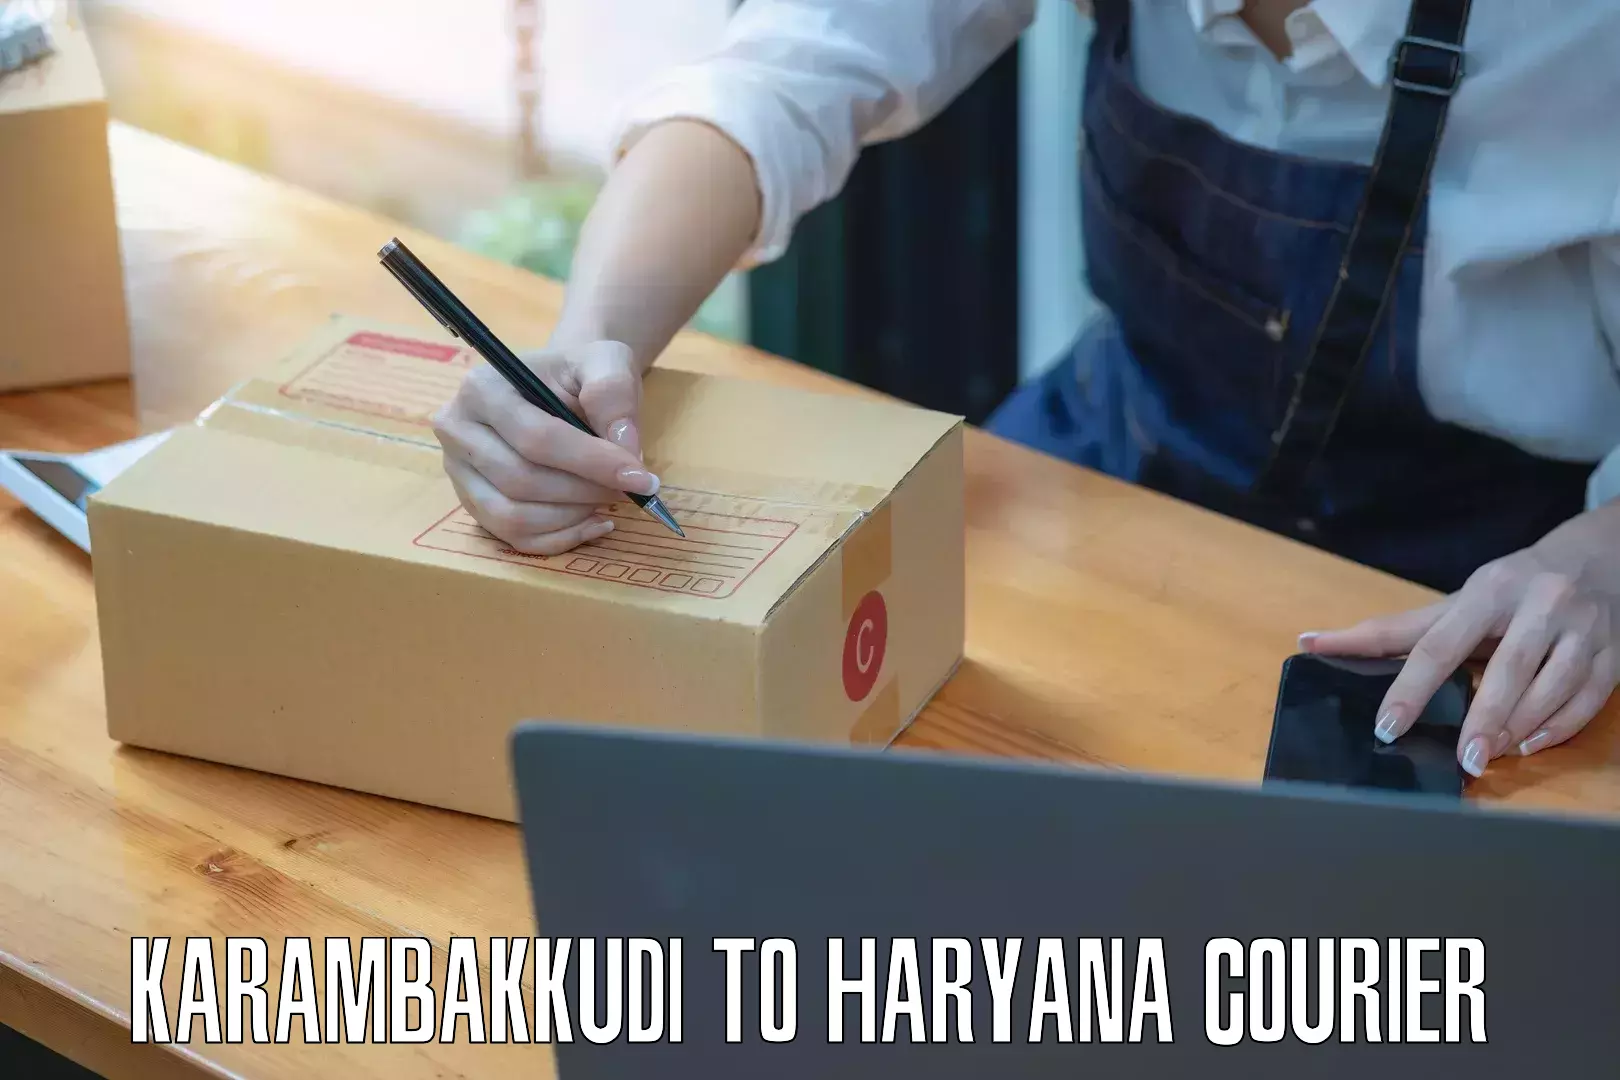 Bulk courier orders Karambakkudi to Karnal